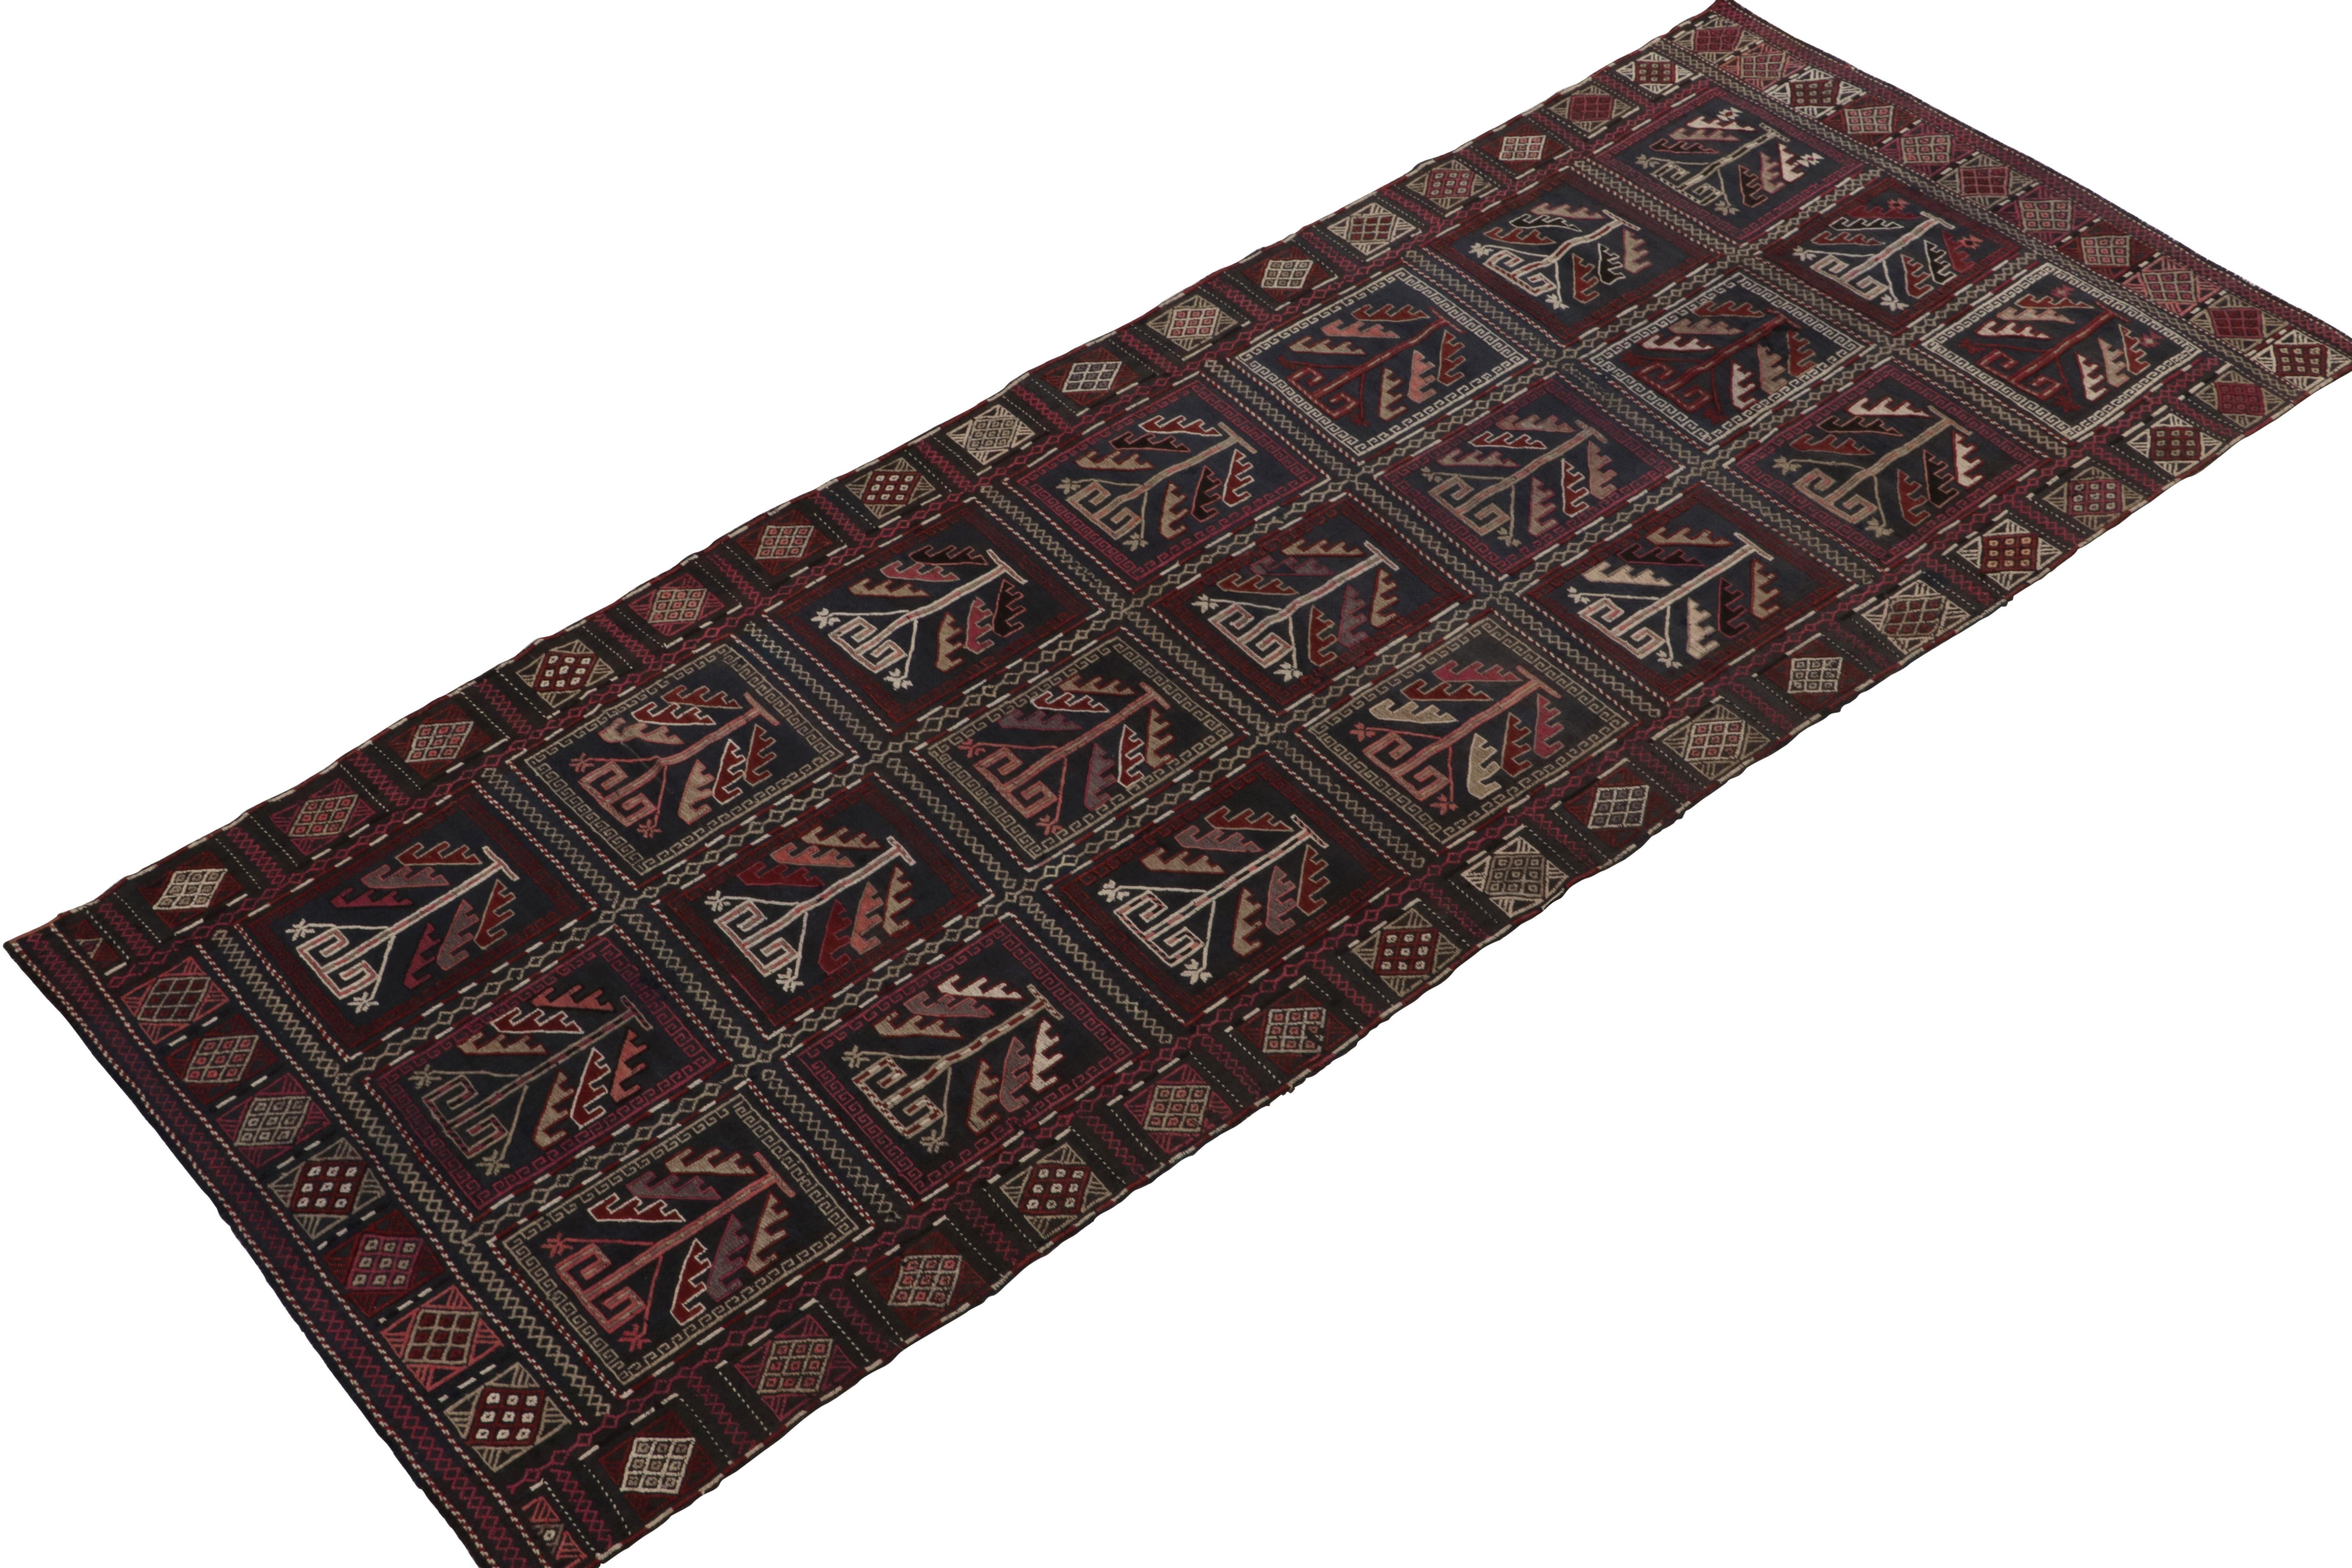 Der seltene antike kaukasische Kelimteppich 4x10 stammt aus der Zeit zwischen 1920 und 1930 und ist vermutlich russischen Ursprungs. 

Das prächtige, aus reiner Wolle handgewebte Design zeugt von sorgfältig gestickten Elementen seiner Zeit und